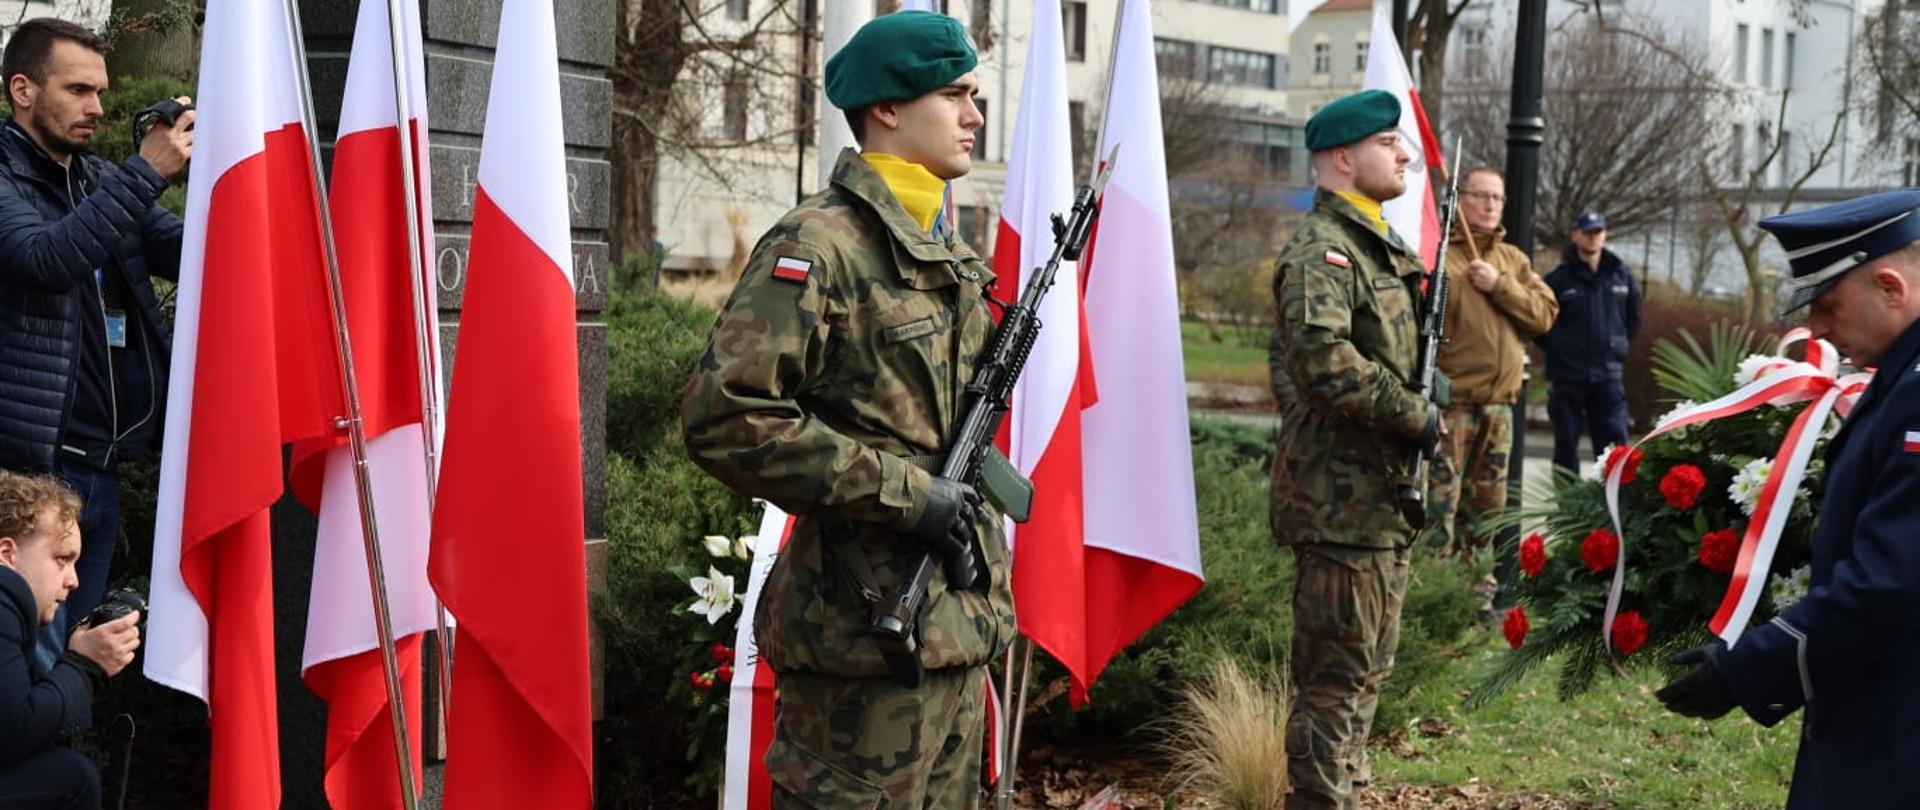 Obchody Narodowego Dnia Pamięci Żołnierzy Wyklętych przy Placu Wolności w Opolu. Na zdjęciu widać złożone kwiaty, dwóch żołnierzy stojących obok, polskie flagi i znicze. 